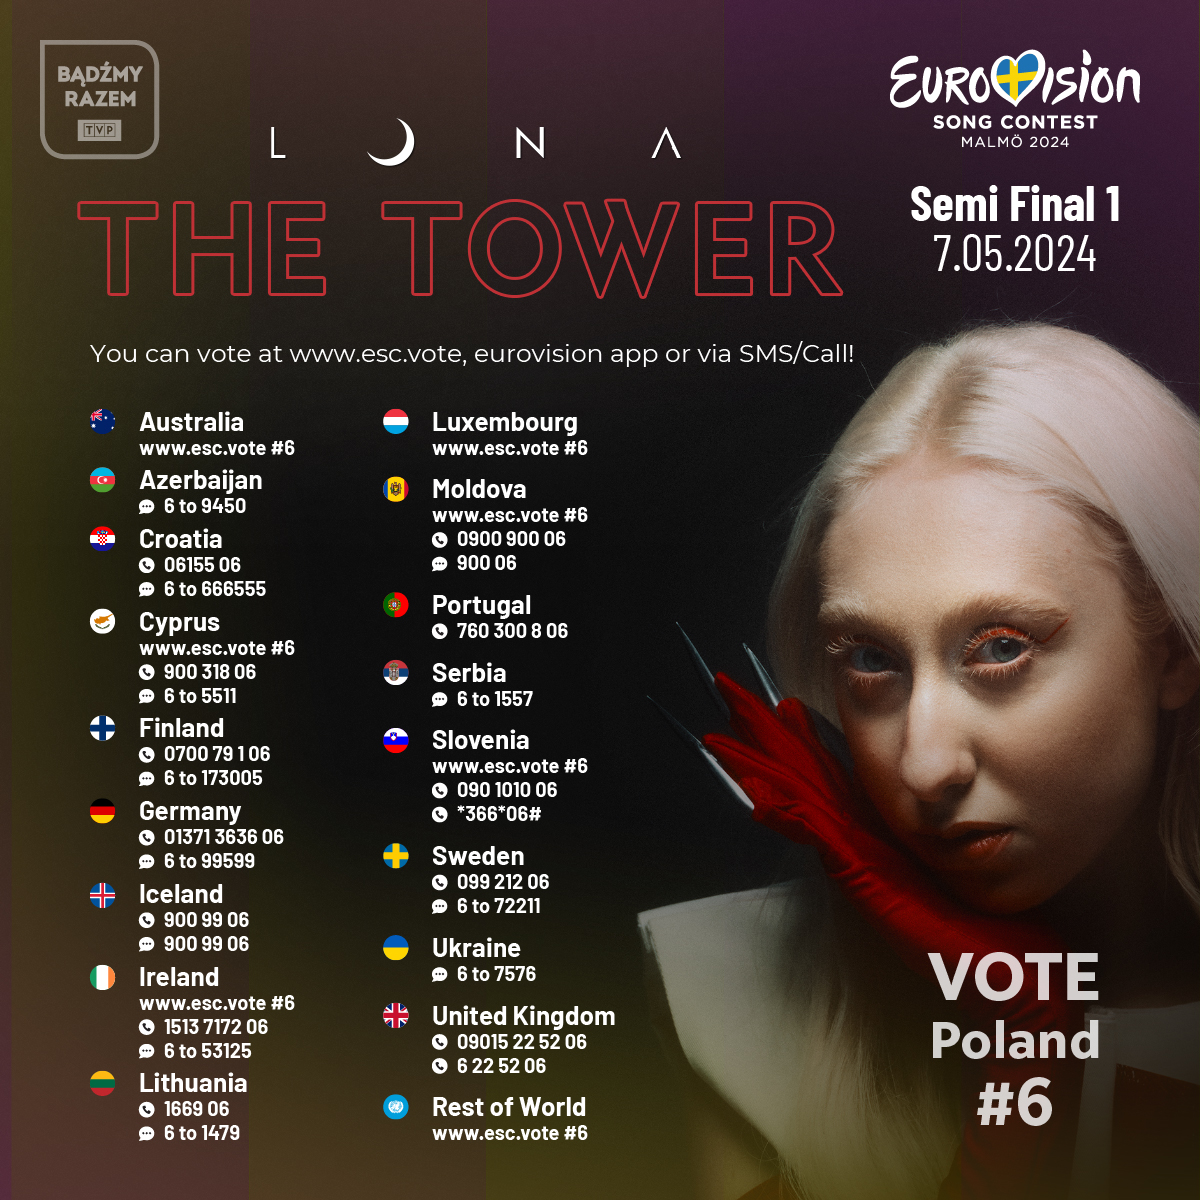 Ikväll är det dags för den första semifinalen i Eurovision Song Contest 2024! Då tävlar 15 länder om tio finalplatser. Polen representeras av artisten Luna med låten The Tower. Du får gärna rösta på hennes bidrag som är nummer 6 om du vill att Polen ska gå till lördagens final!